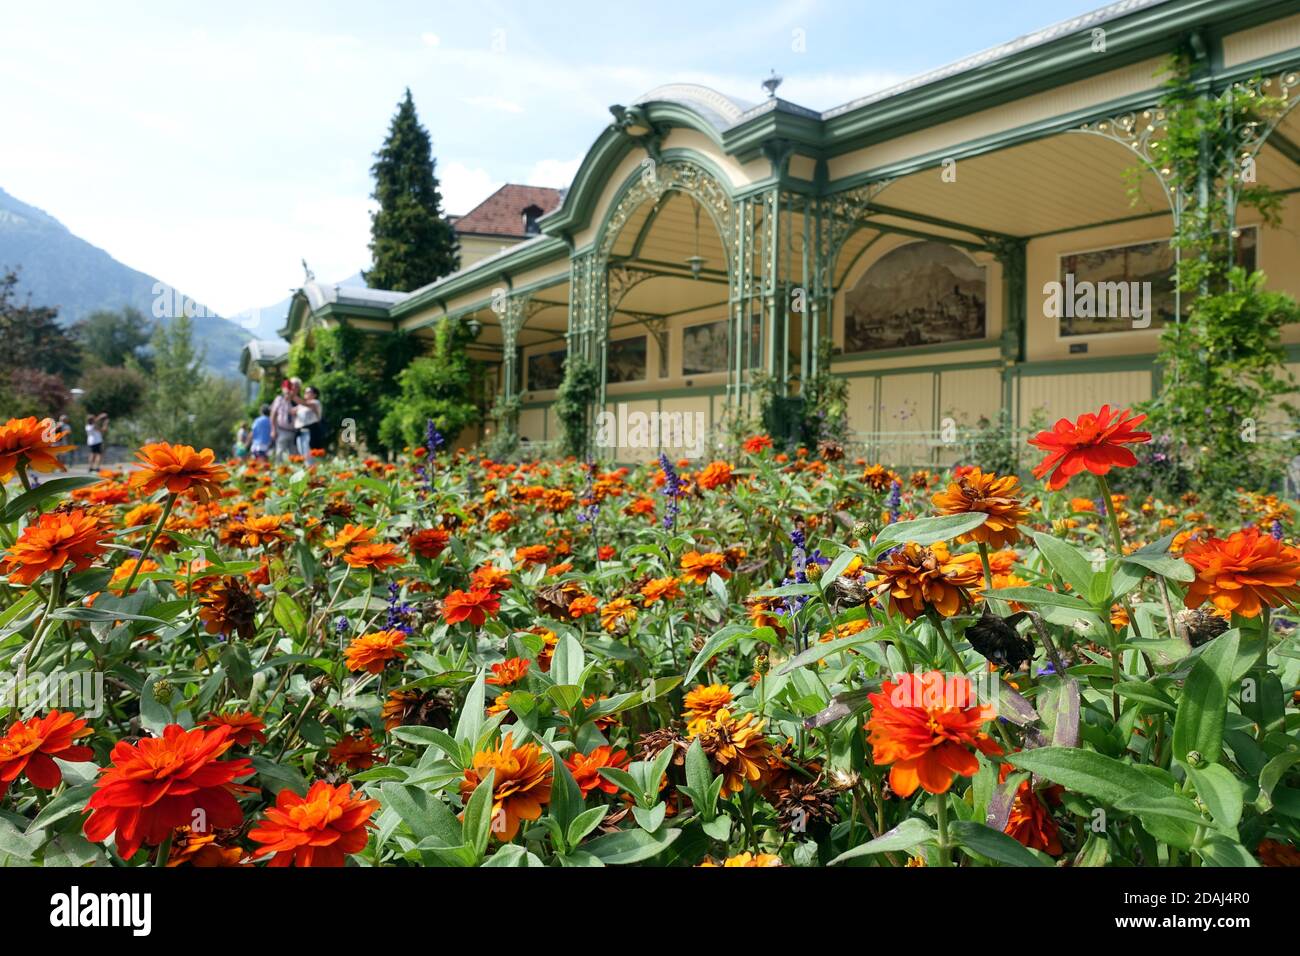 Blumenbeete an der denkmalgeschützten Wandelhalle an der Passerpromenade, Meran, Südtirol, Italien Stock Photo